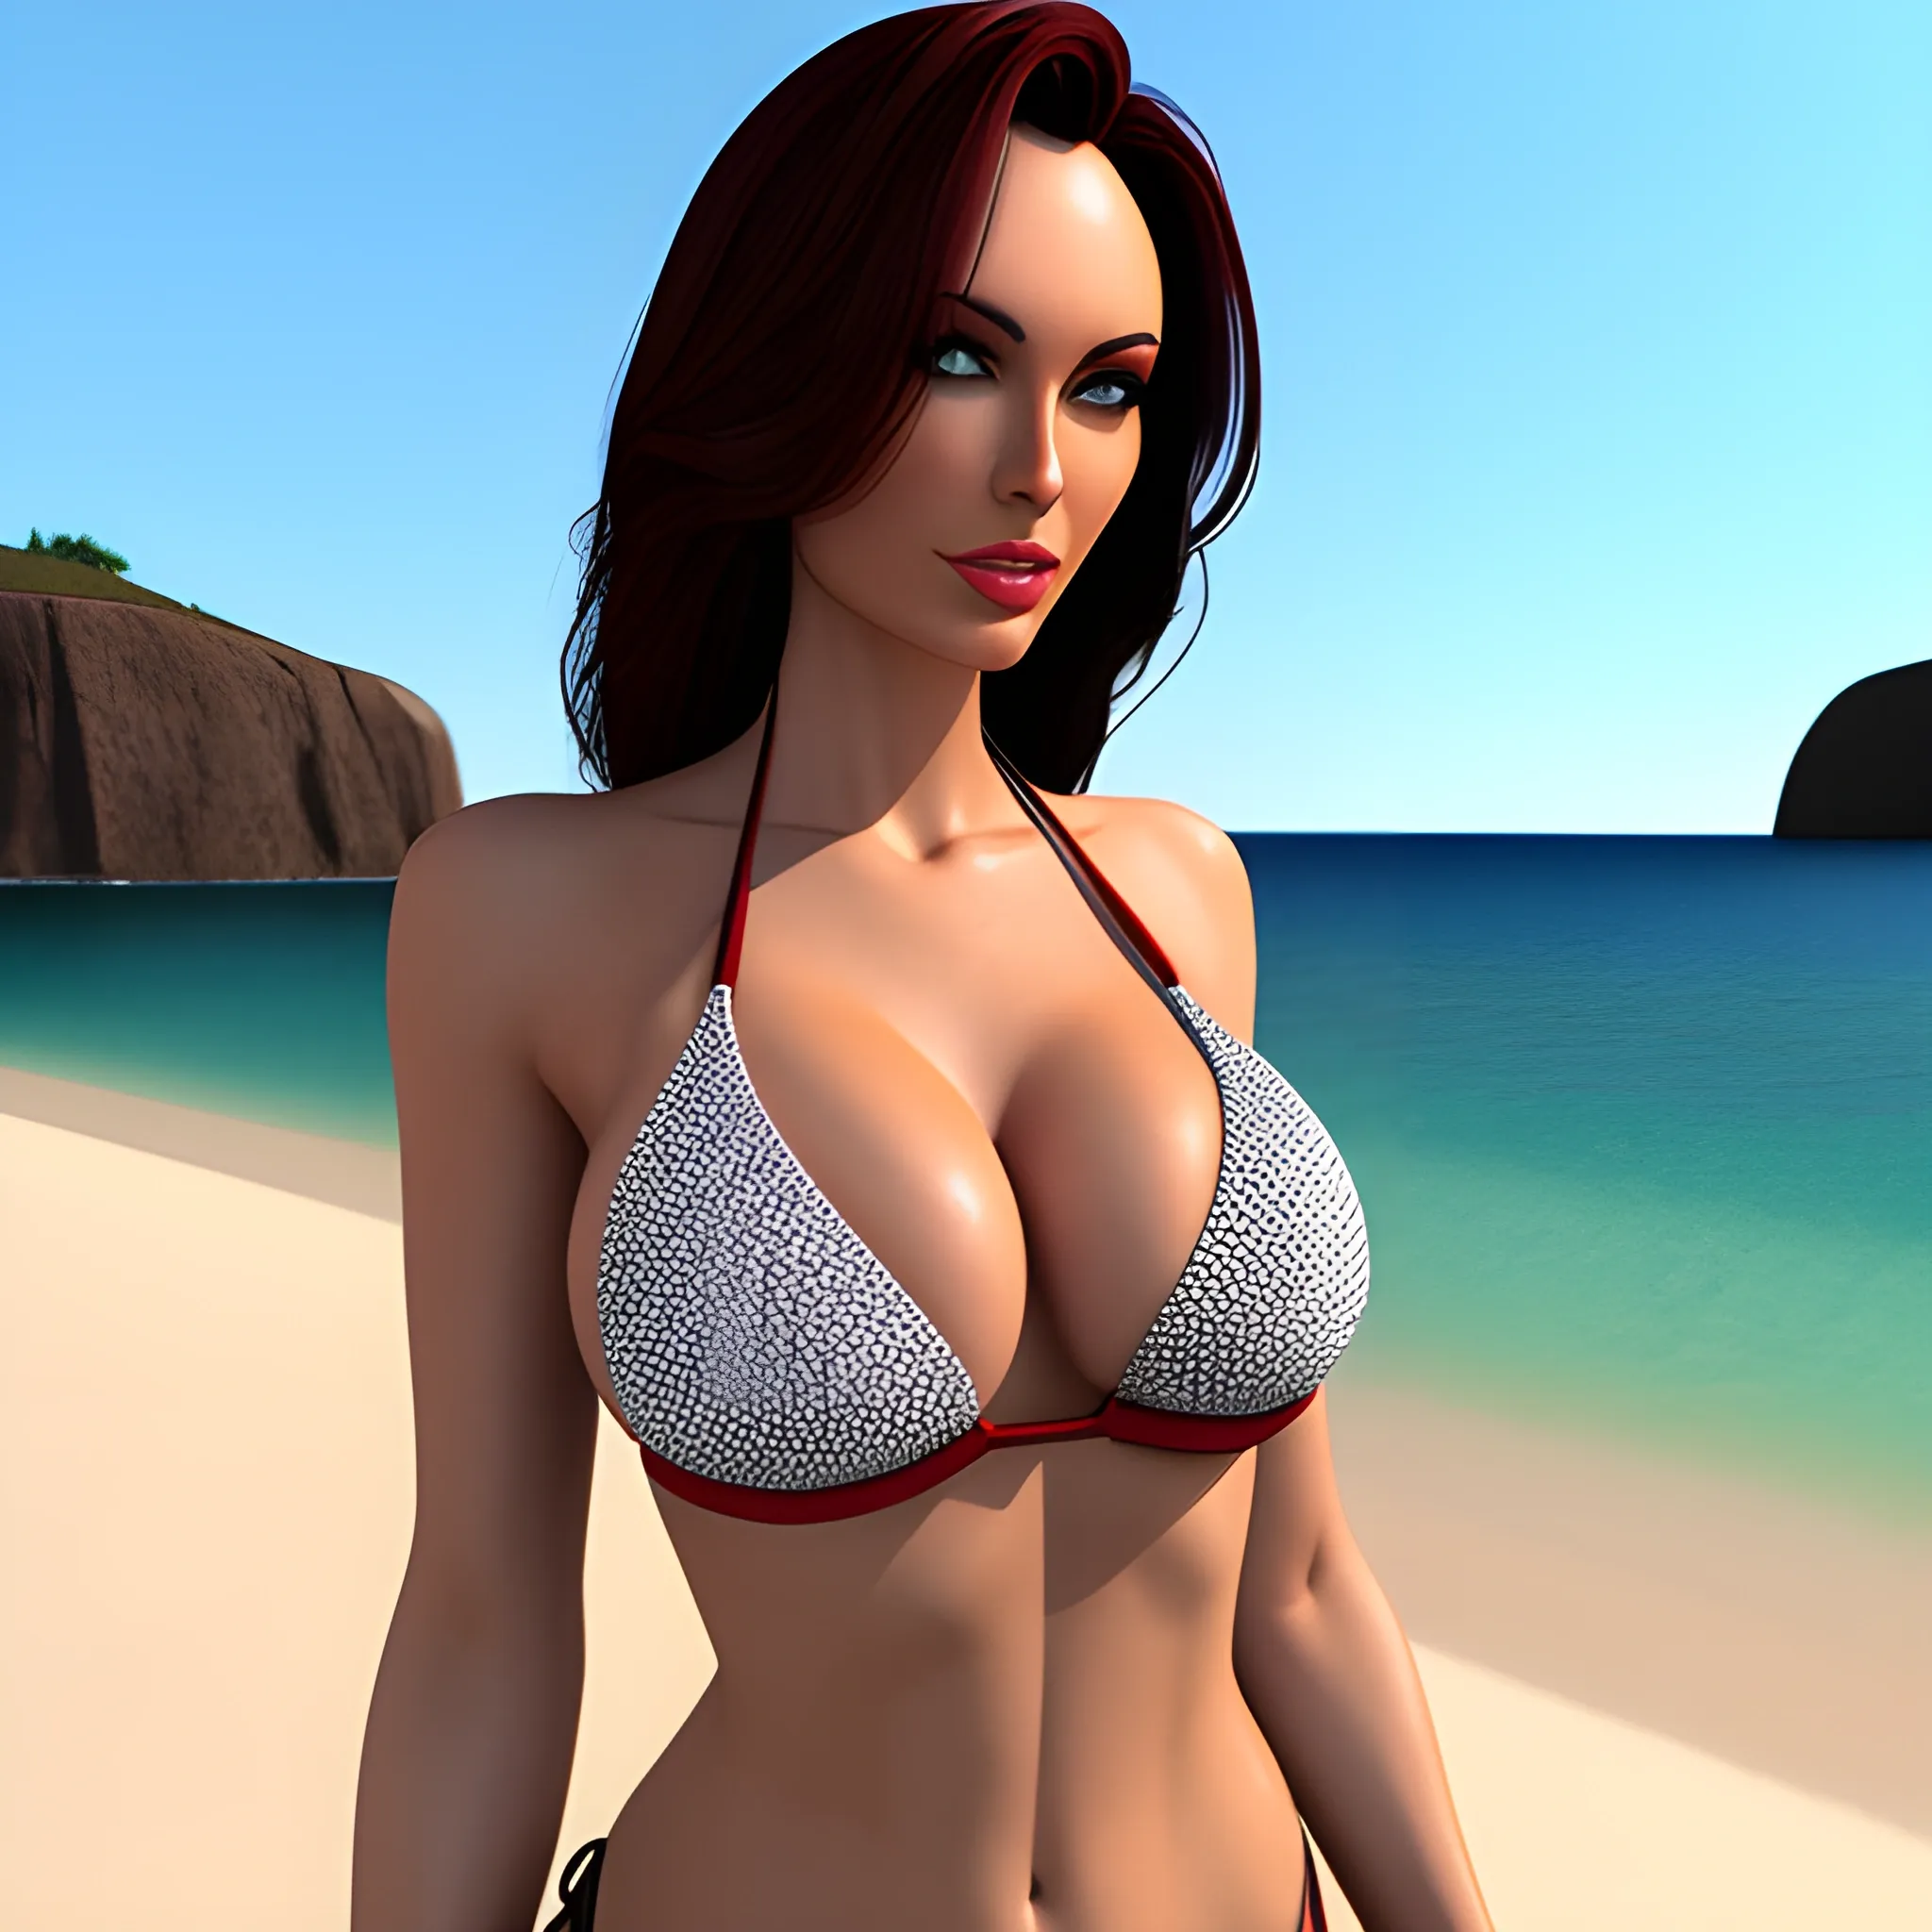 Bikini girl, 3D